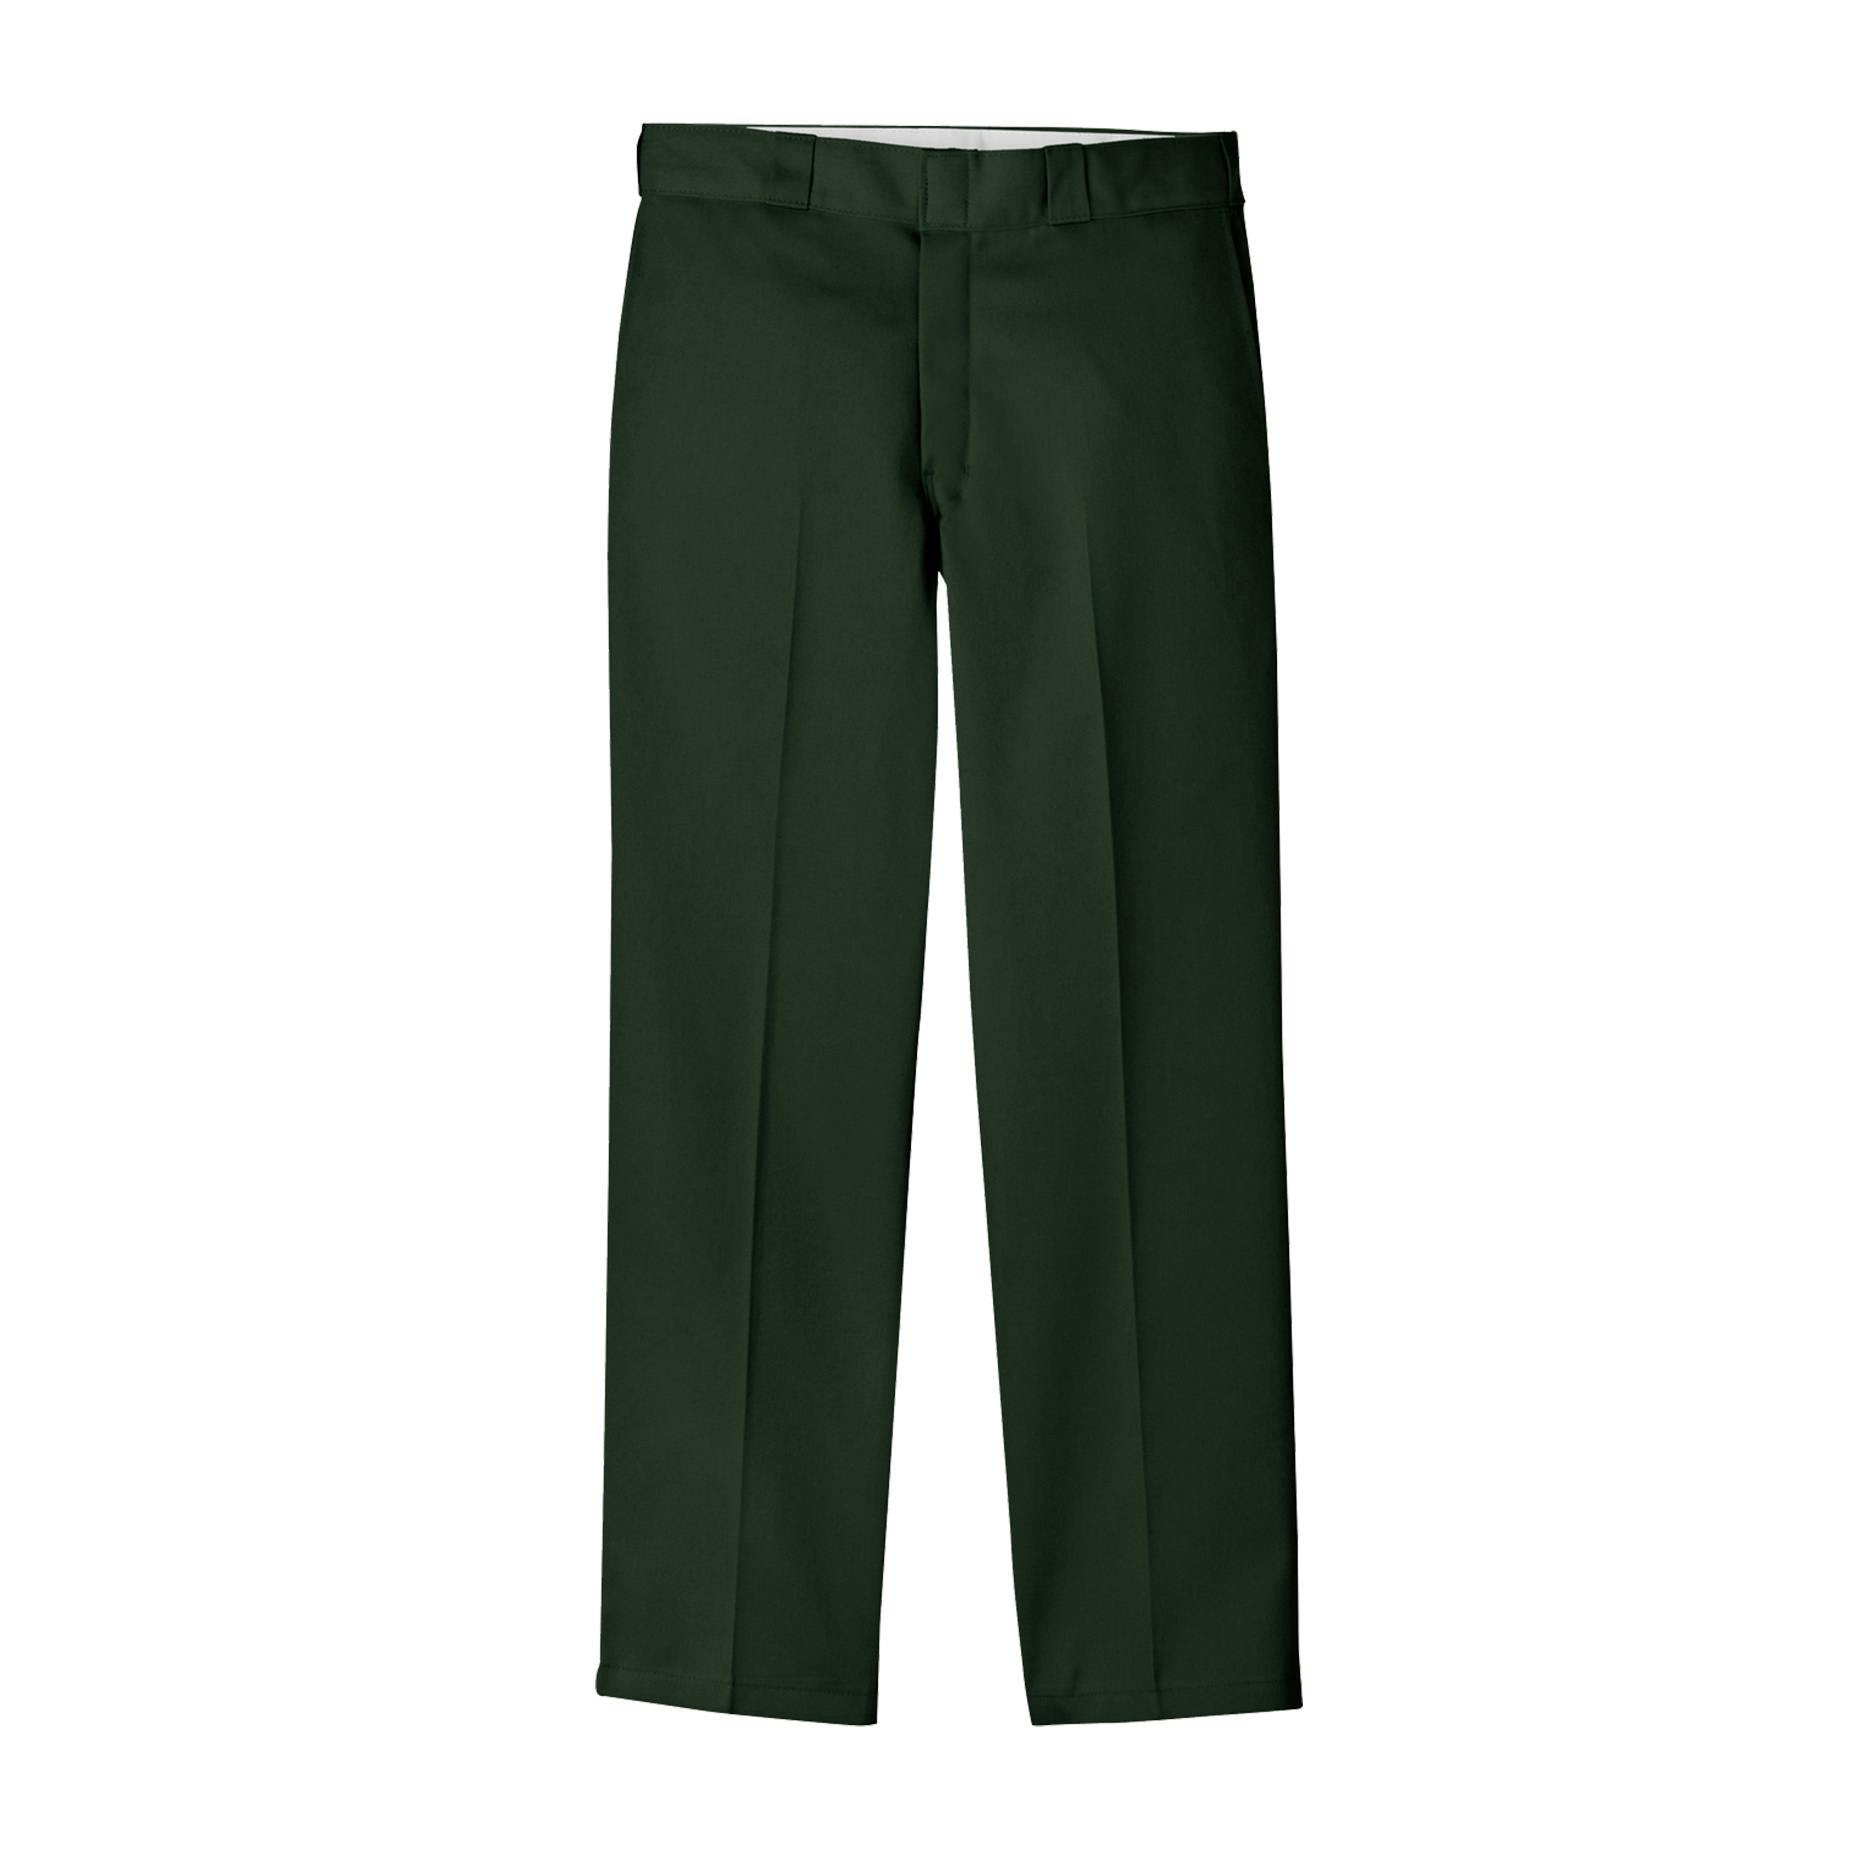 Dickies Mens Original 874 Work Pants - Hunter Green - The Jeans Warehouse